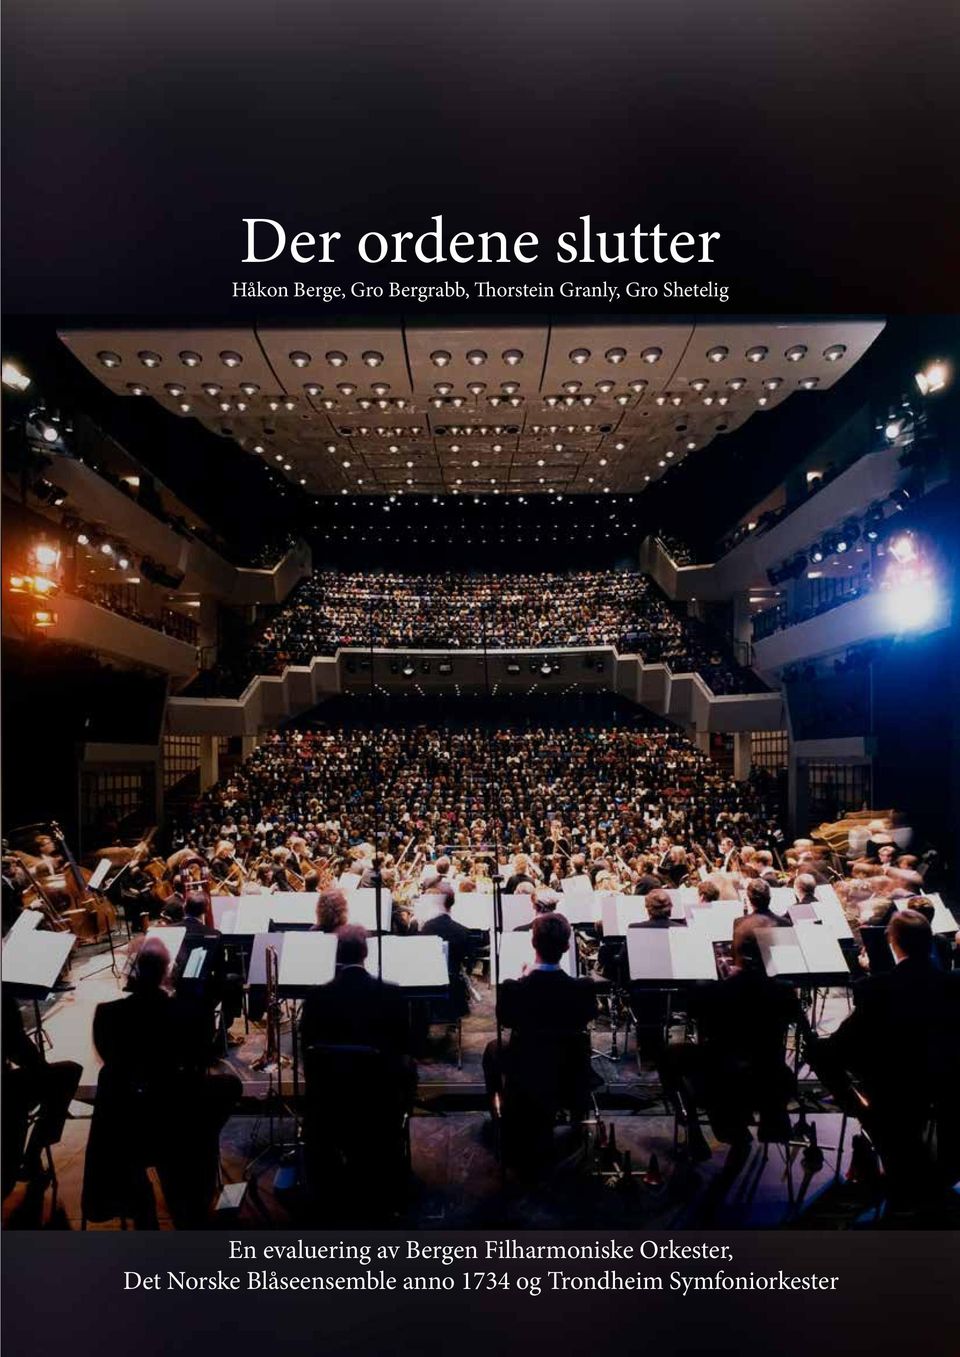 av Bergen Filharmoniske Orkester, Det Norske